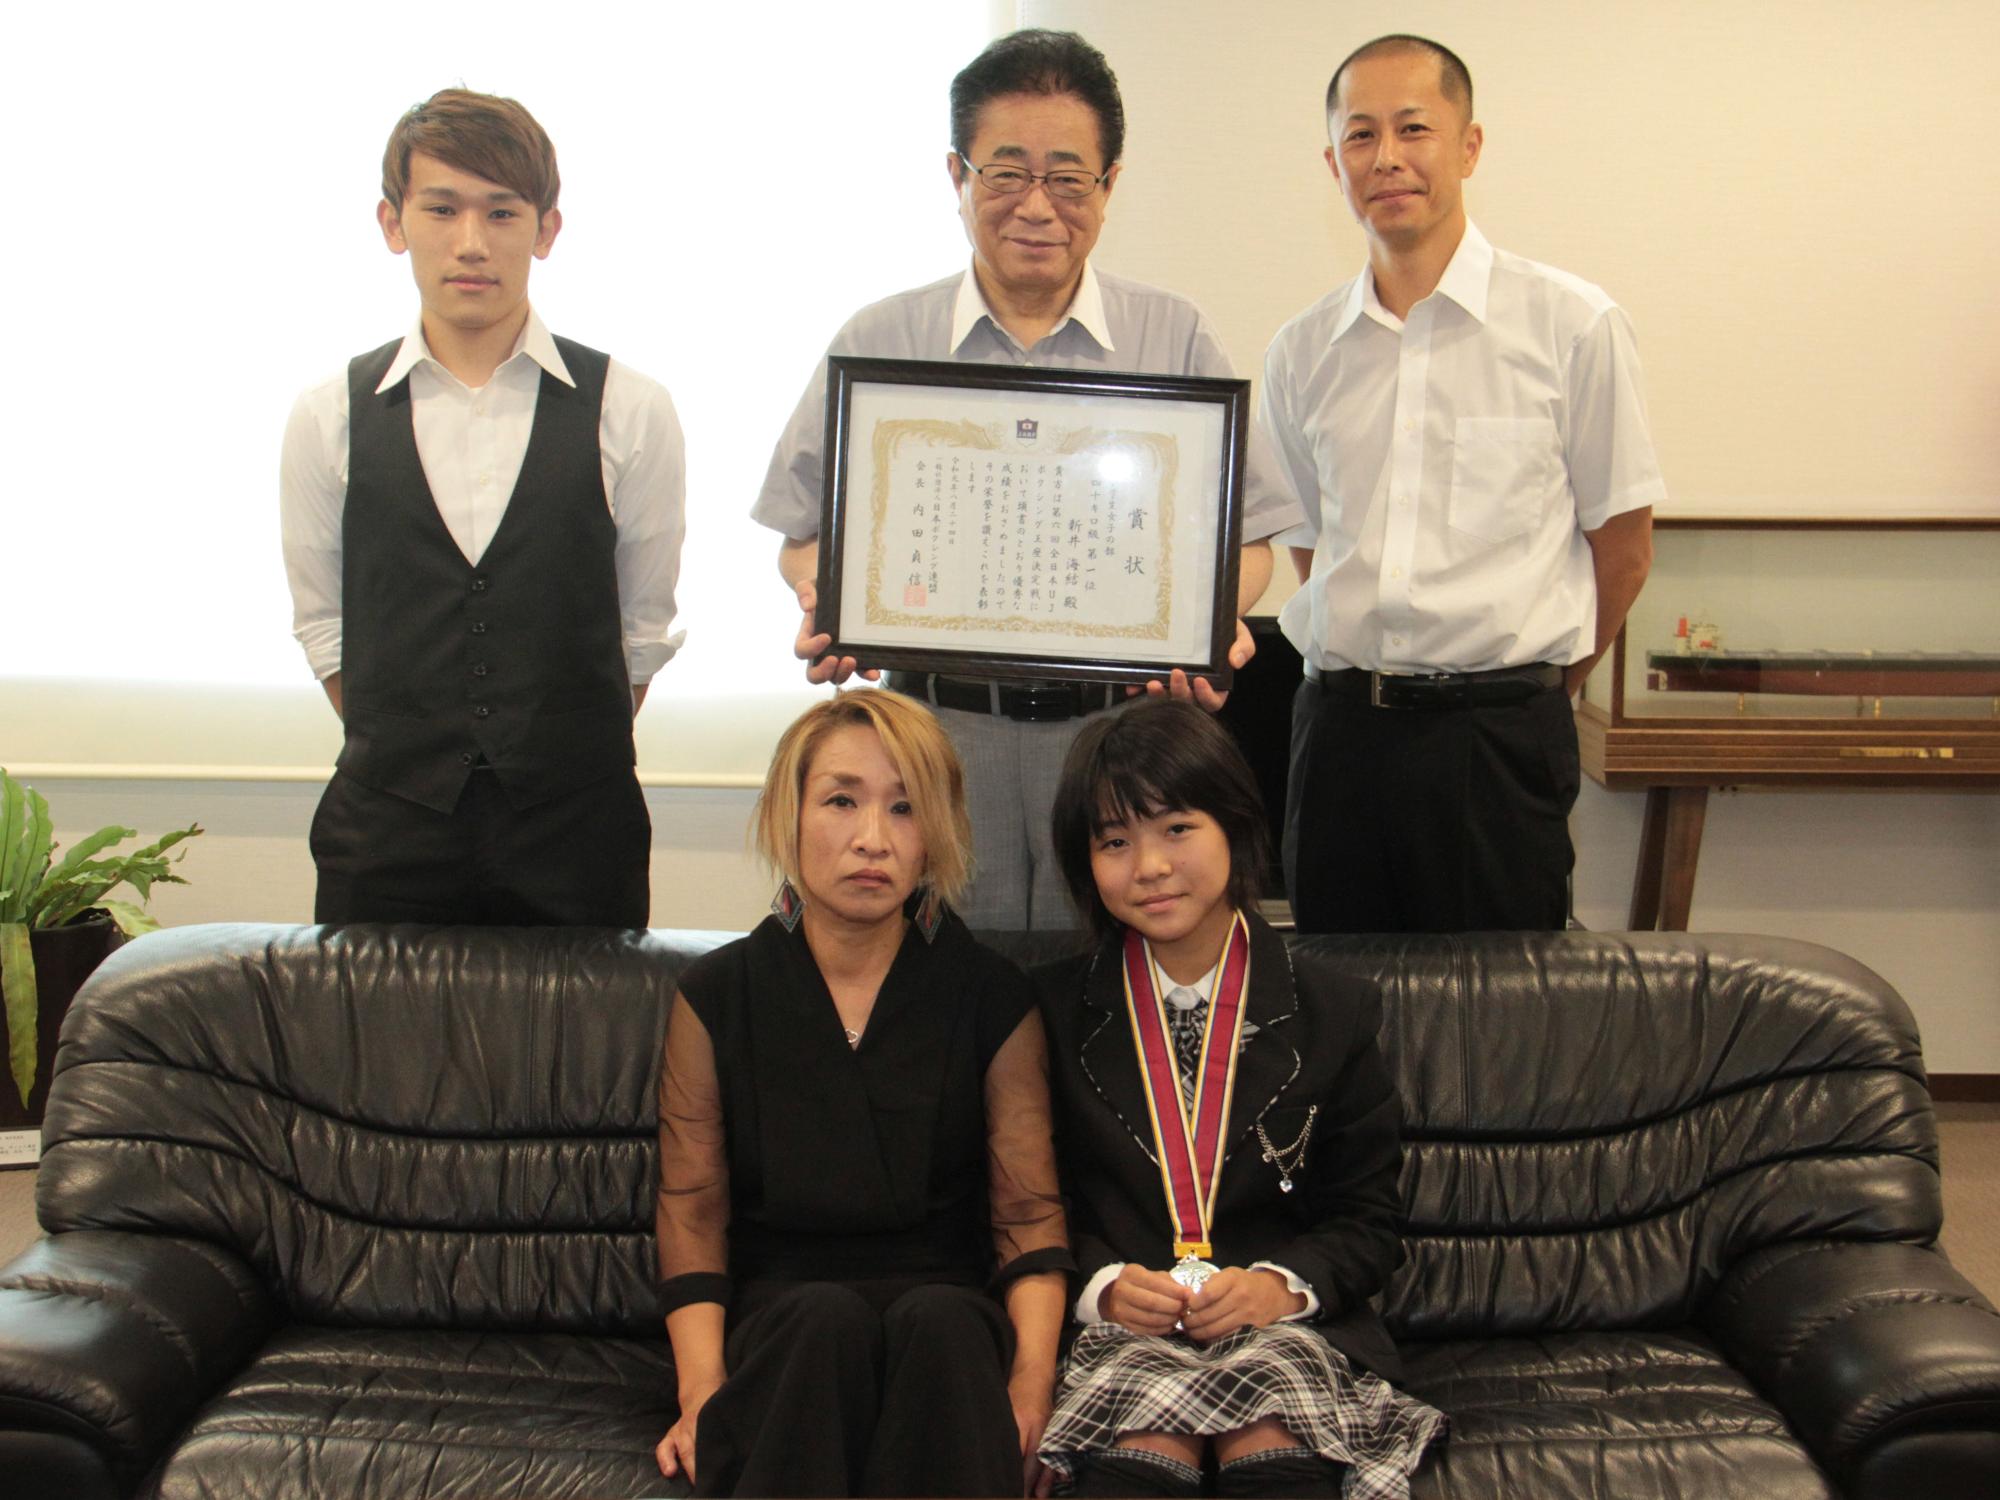 全日本大会での優勝を報告に来た新井さんらと市長が写真を撮る様子